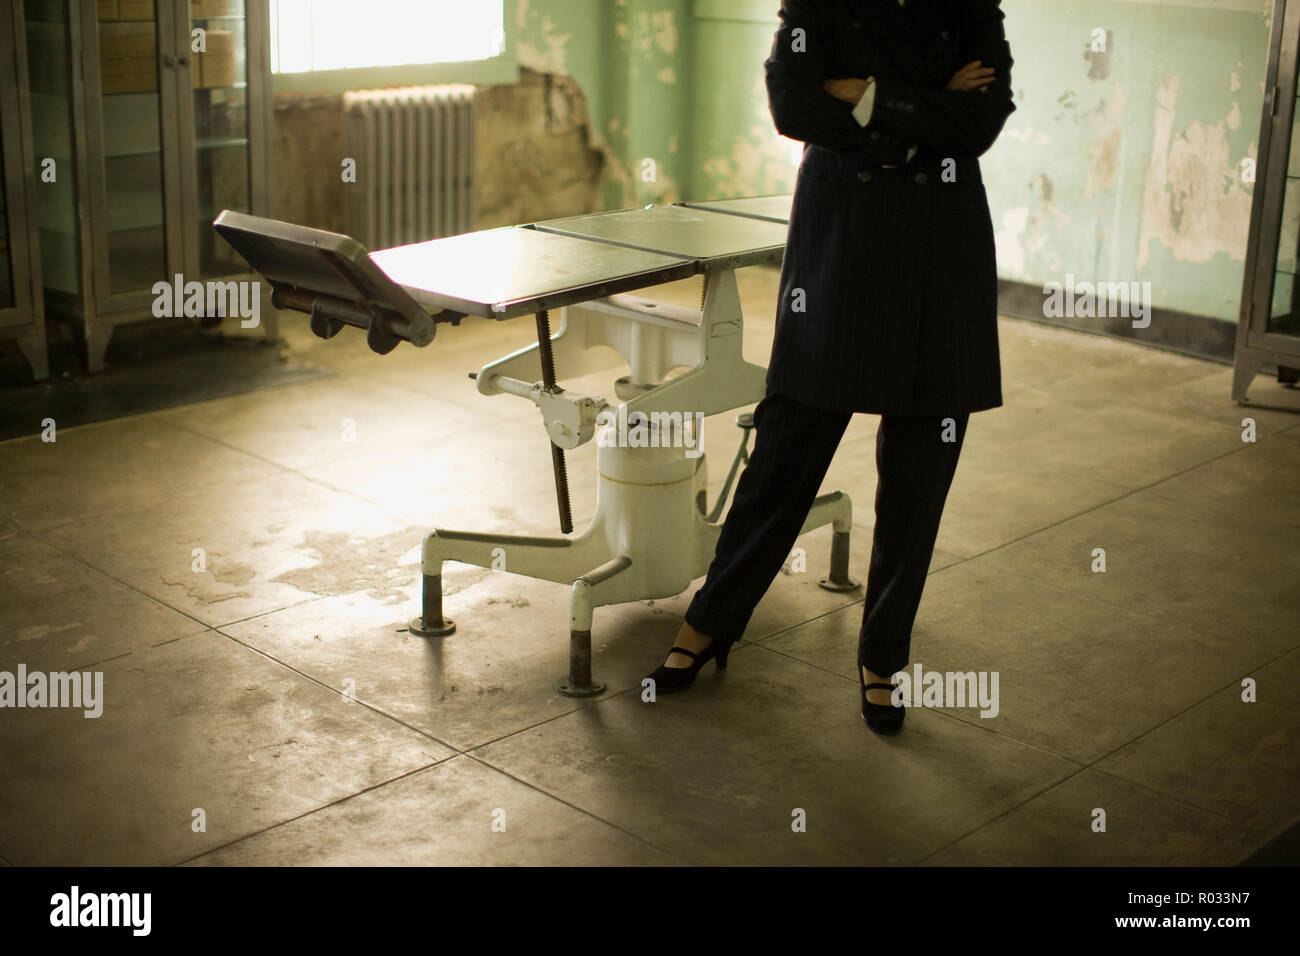 Verschränkte Arme eines mittleren nach Business Frau neben einem alten Betriebssystem Tabelle in ein verfallenes Gebäude. Stockfoto